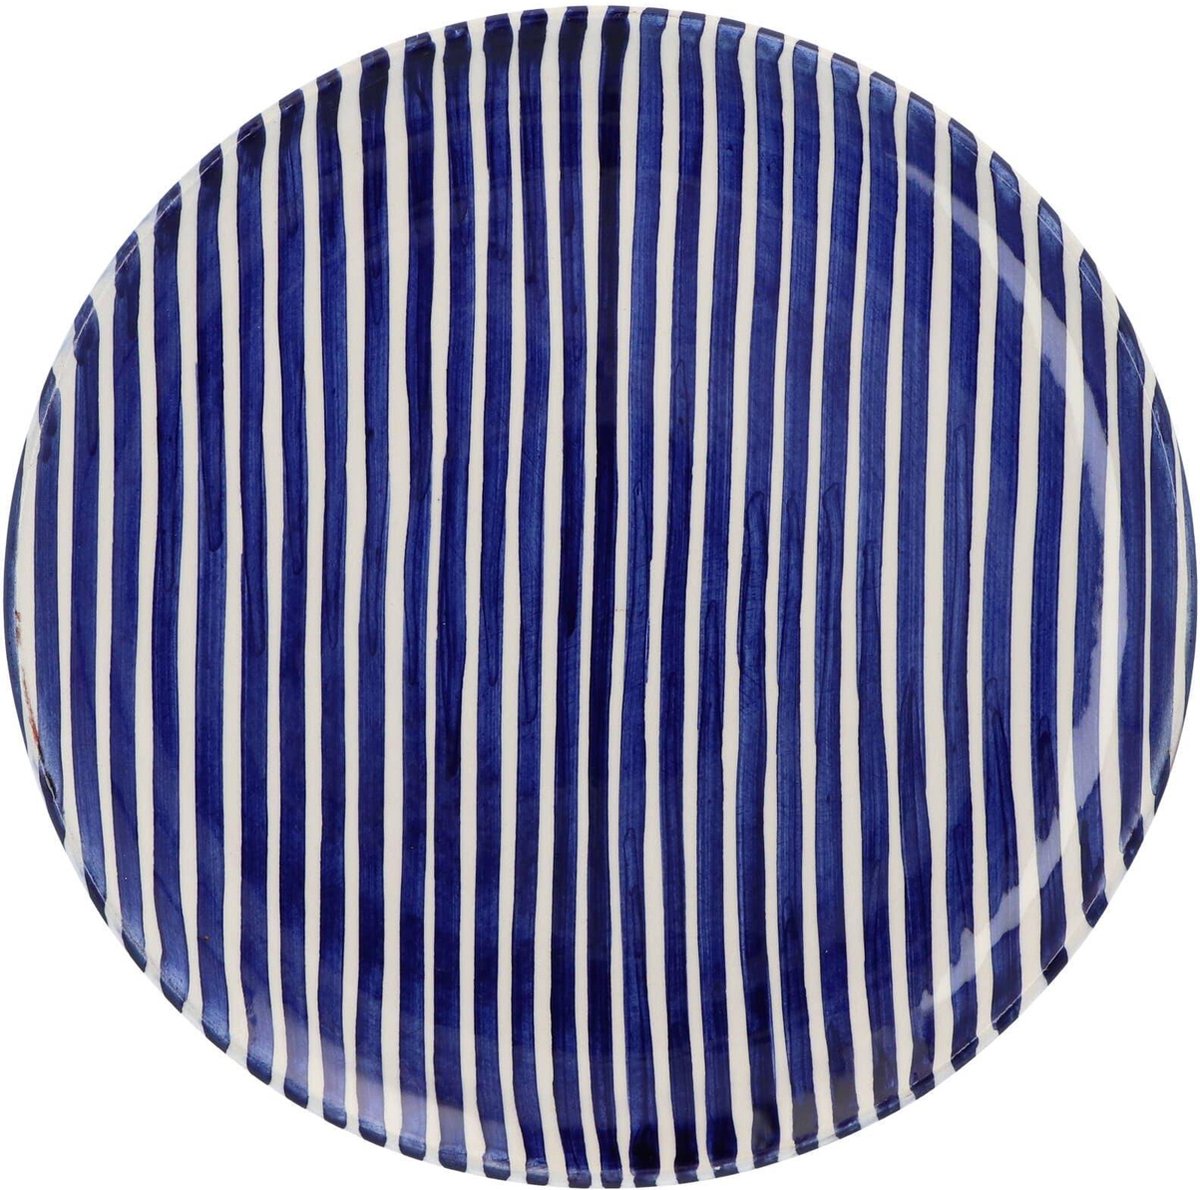 Casa Cubista - Ontbijtbord met small streeppatroon blauw 23cm - Kleine borden